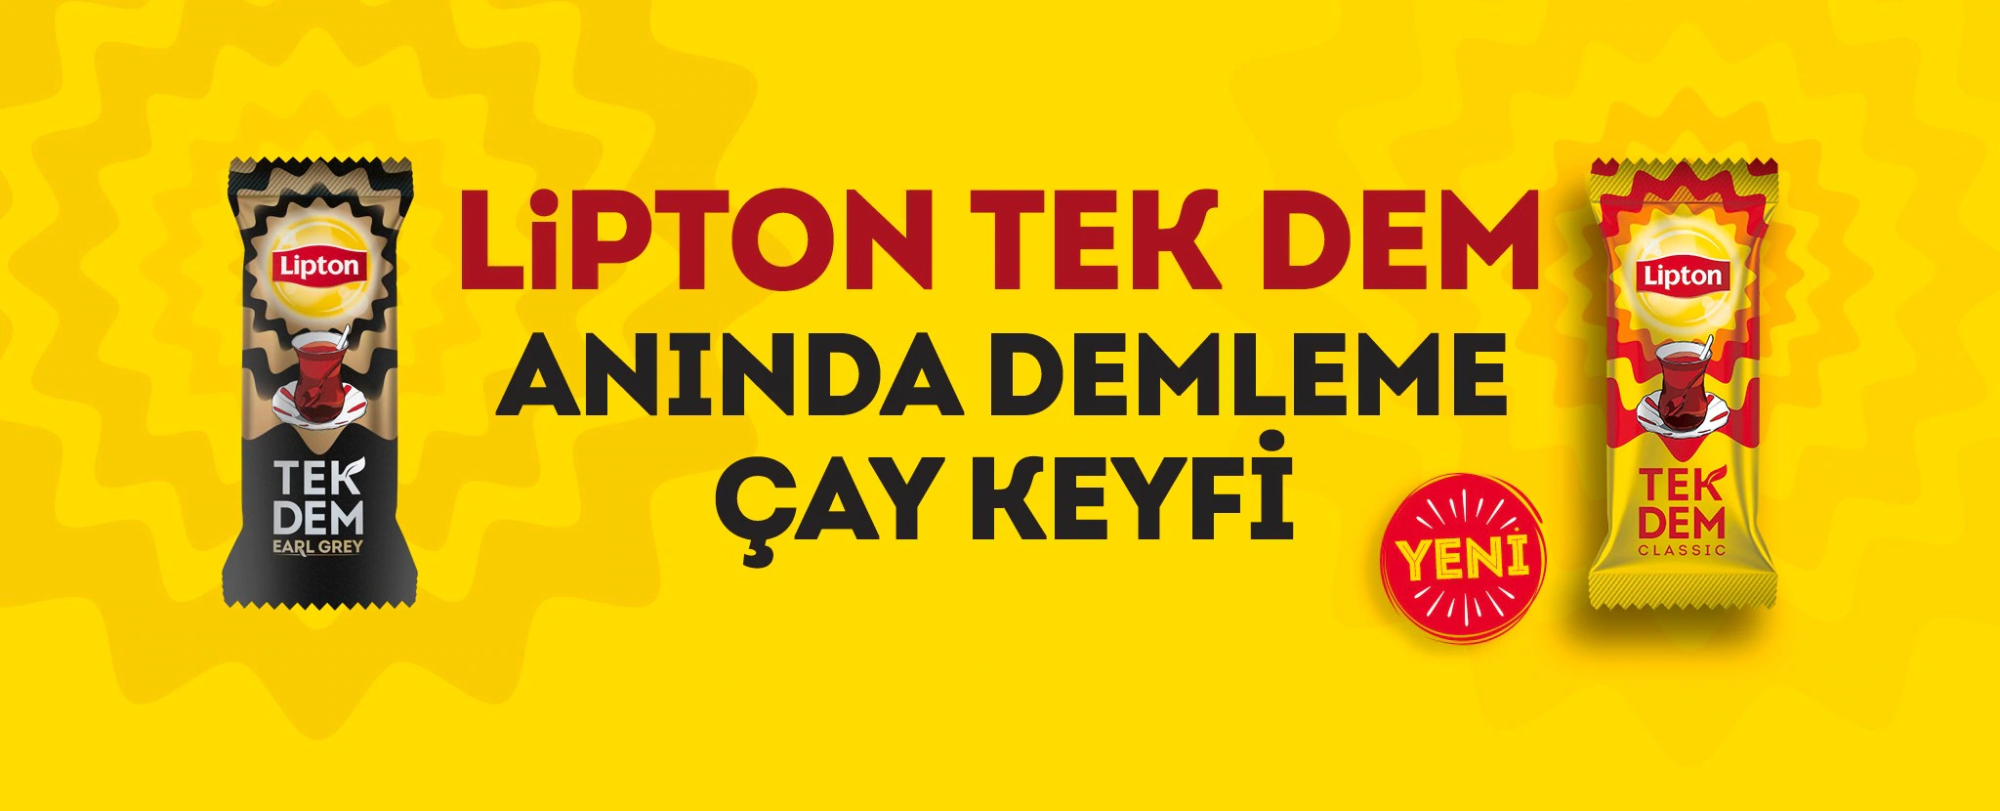 Lipton Turkey Home Page Banner